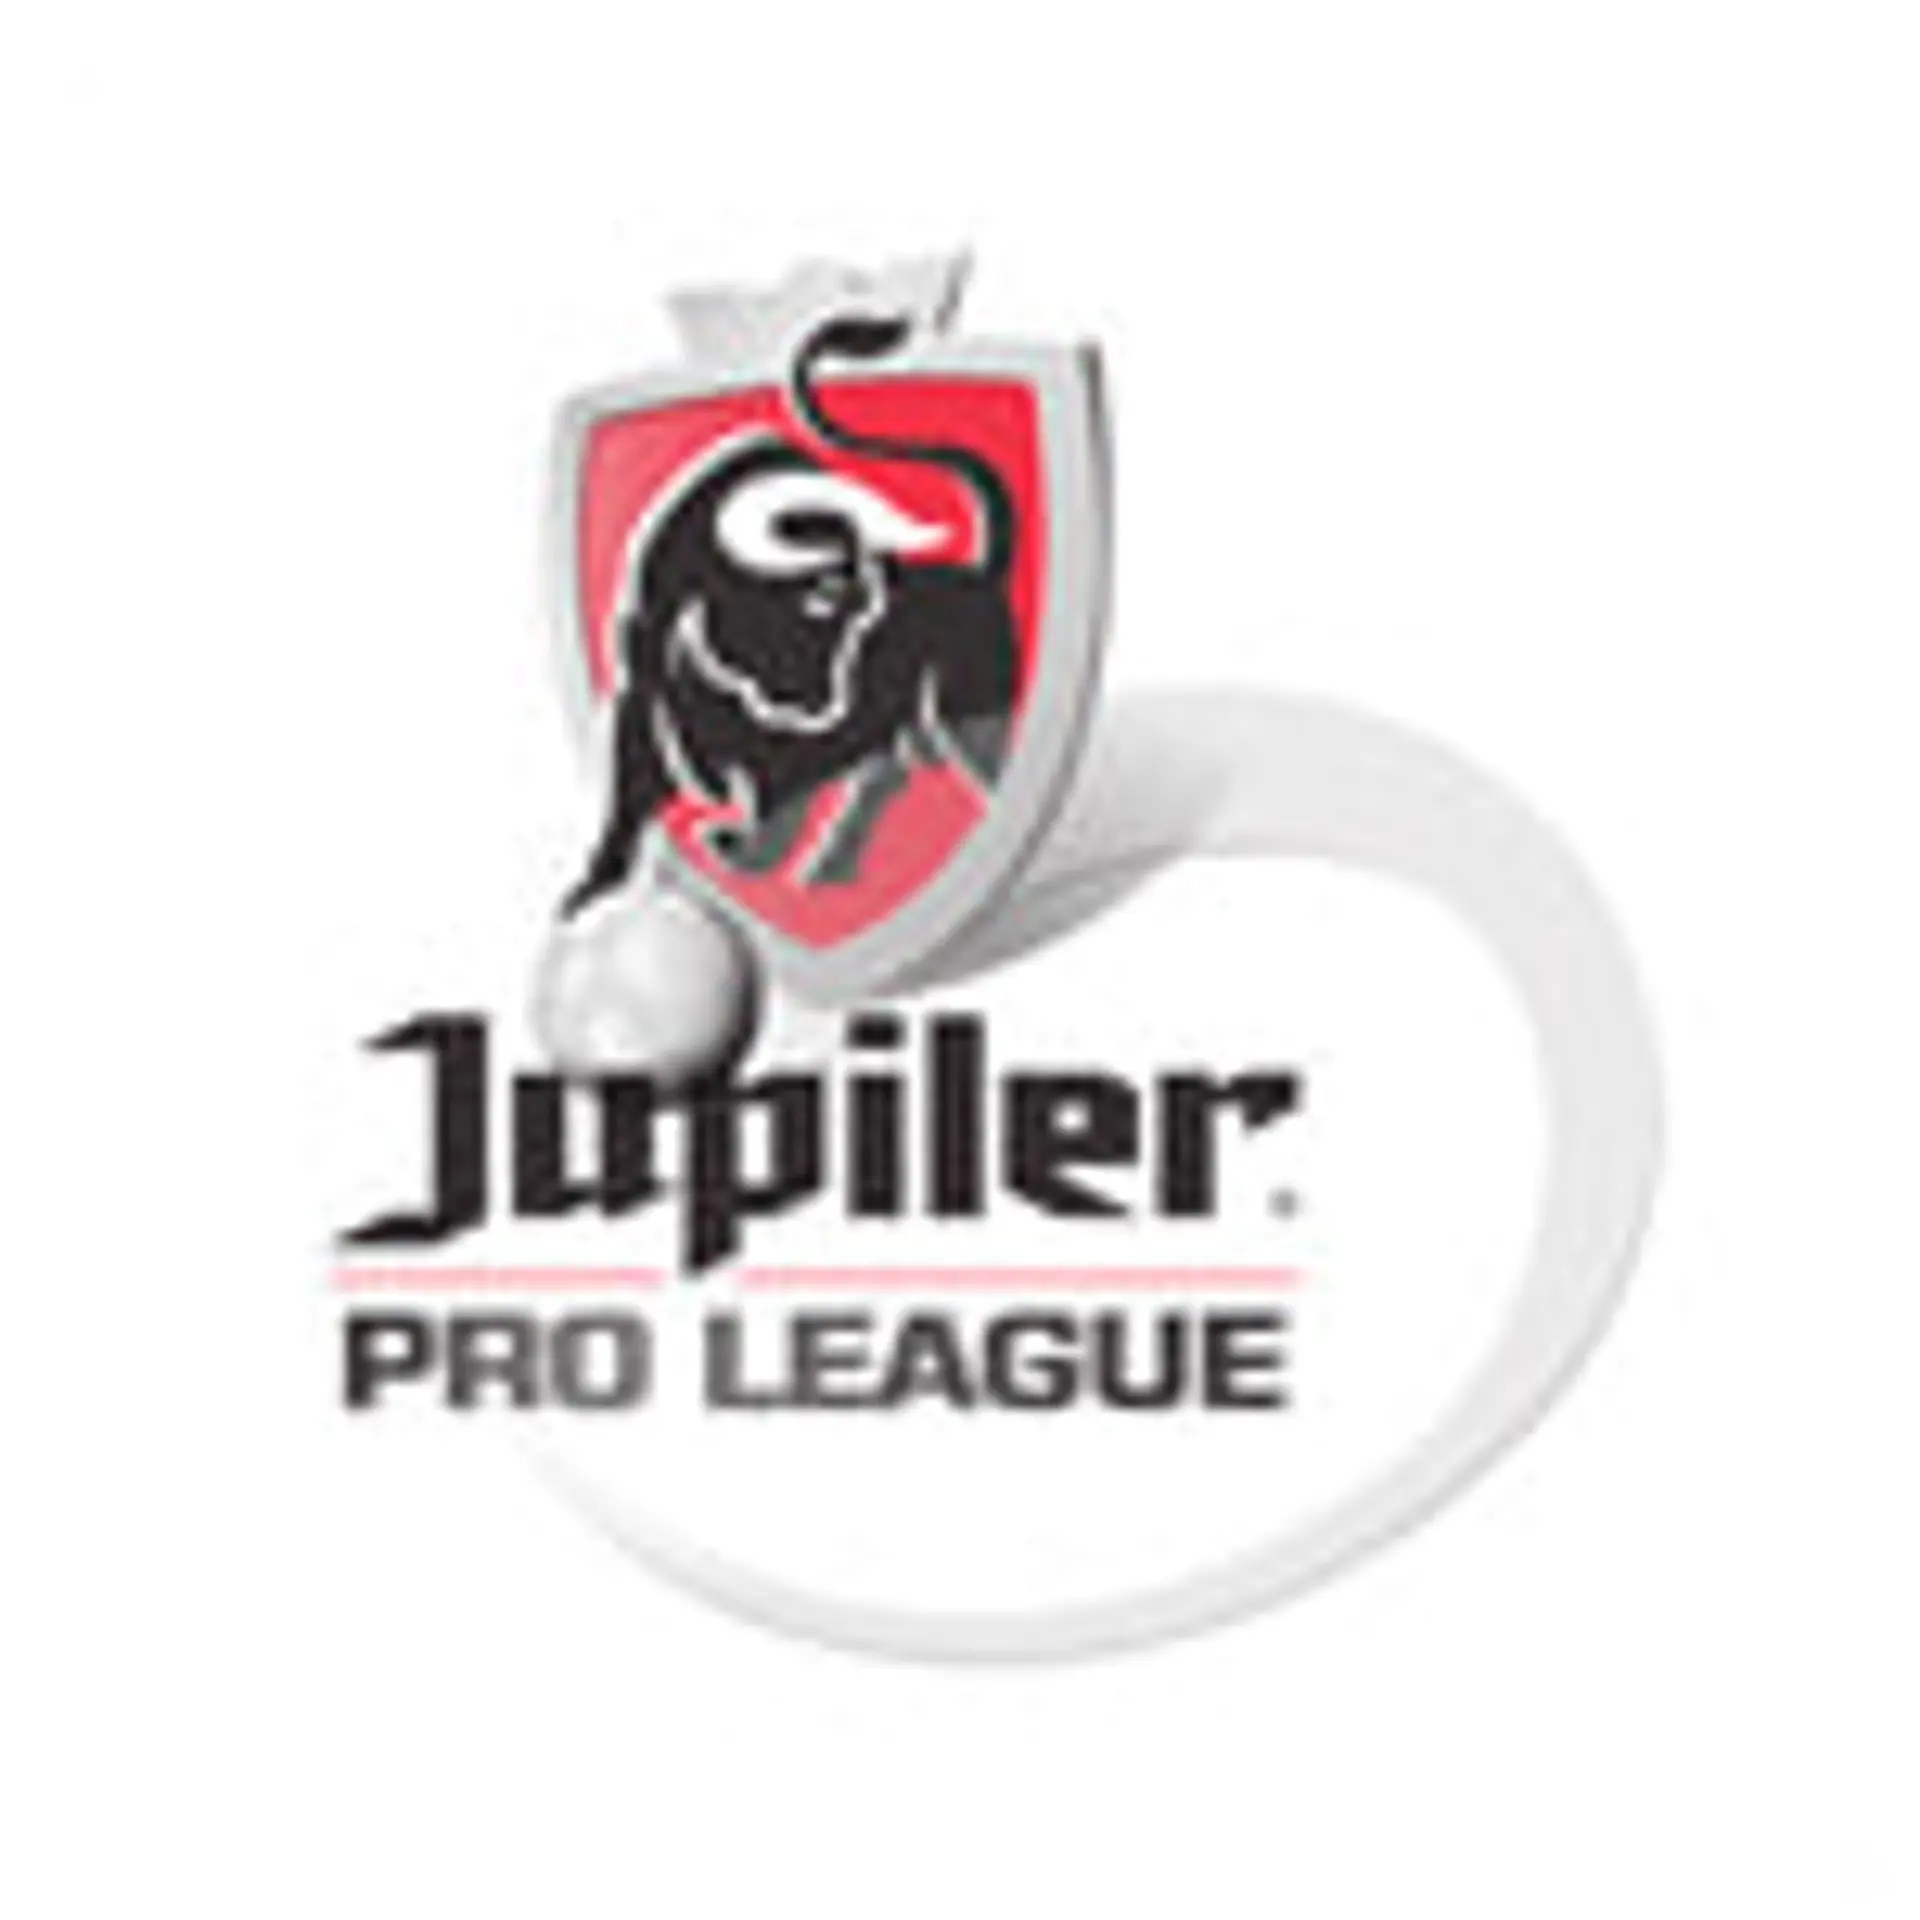 Belgium. Pro League